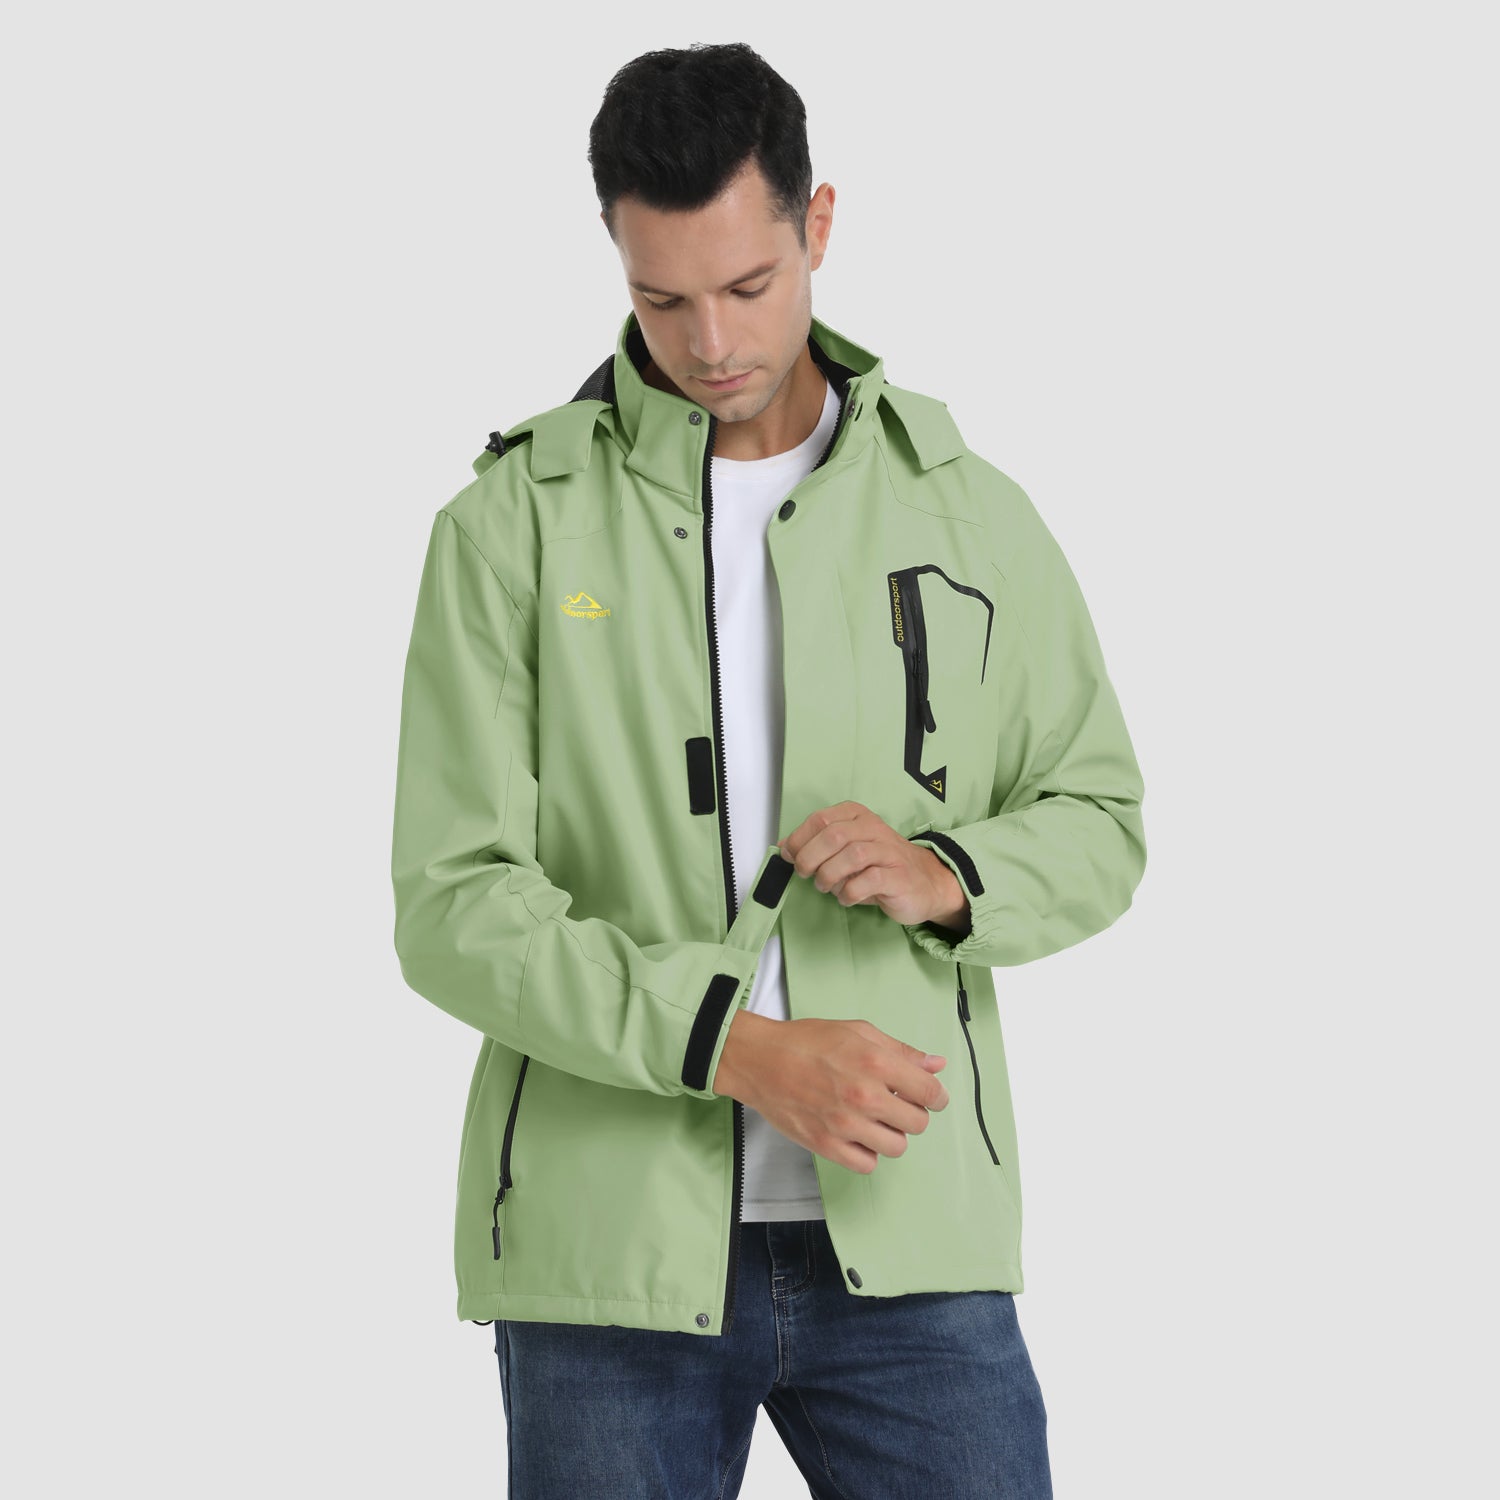 MAGCOMSEN Men's Lightweight Windbreaker Rain Jacket Raincoat with  Detachable Hood for Hiking Fishing Activewear(Fluorescent Green) - Magcomsen